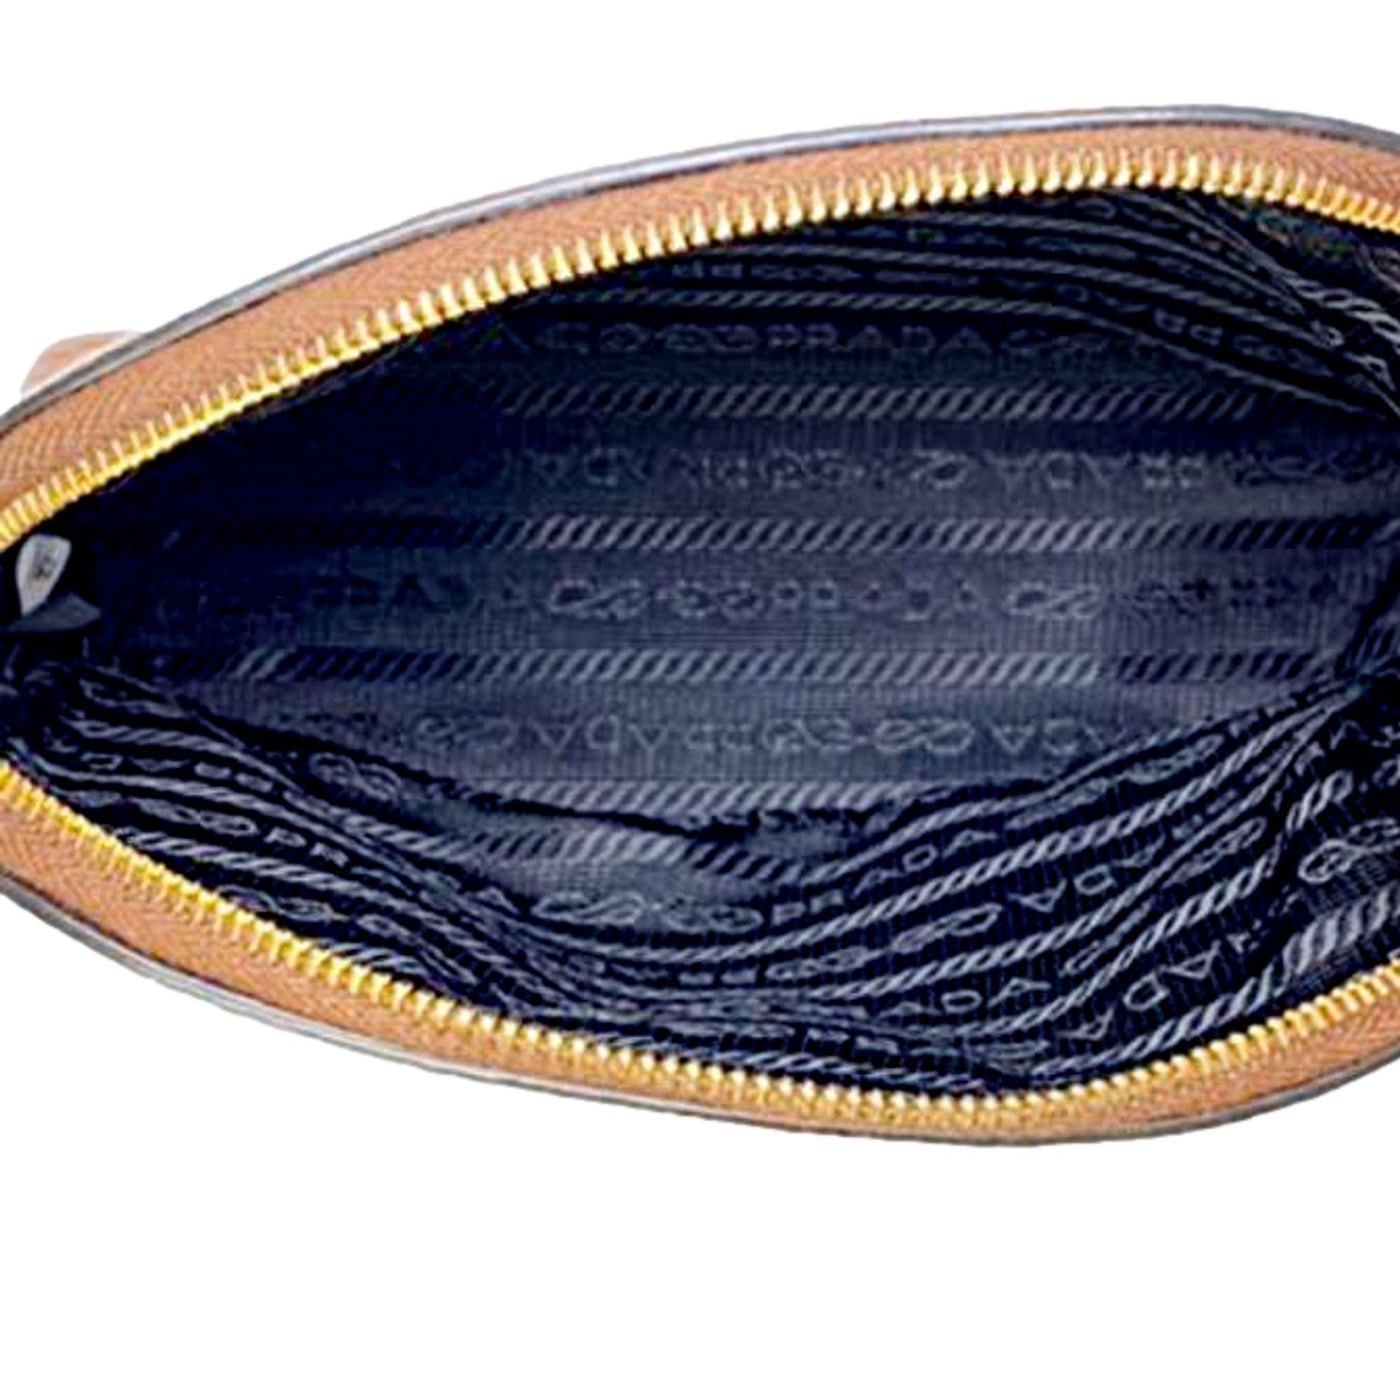 Prada Vitello Daino Cannella Brown Leather Small Cosmetic Case Bag - LUXURYMRKT